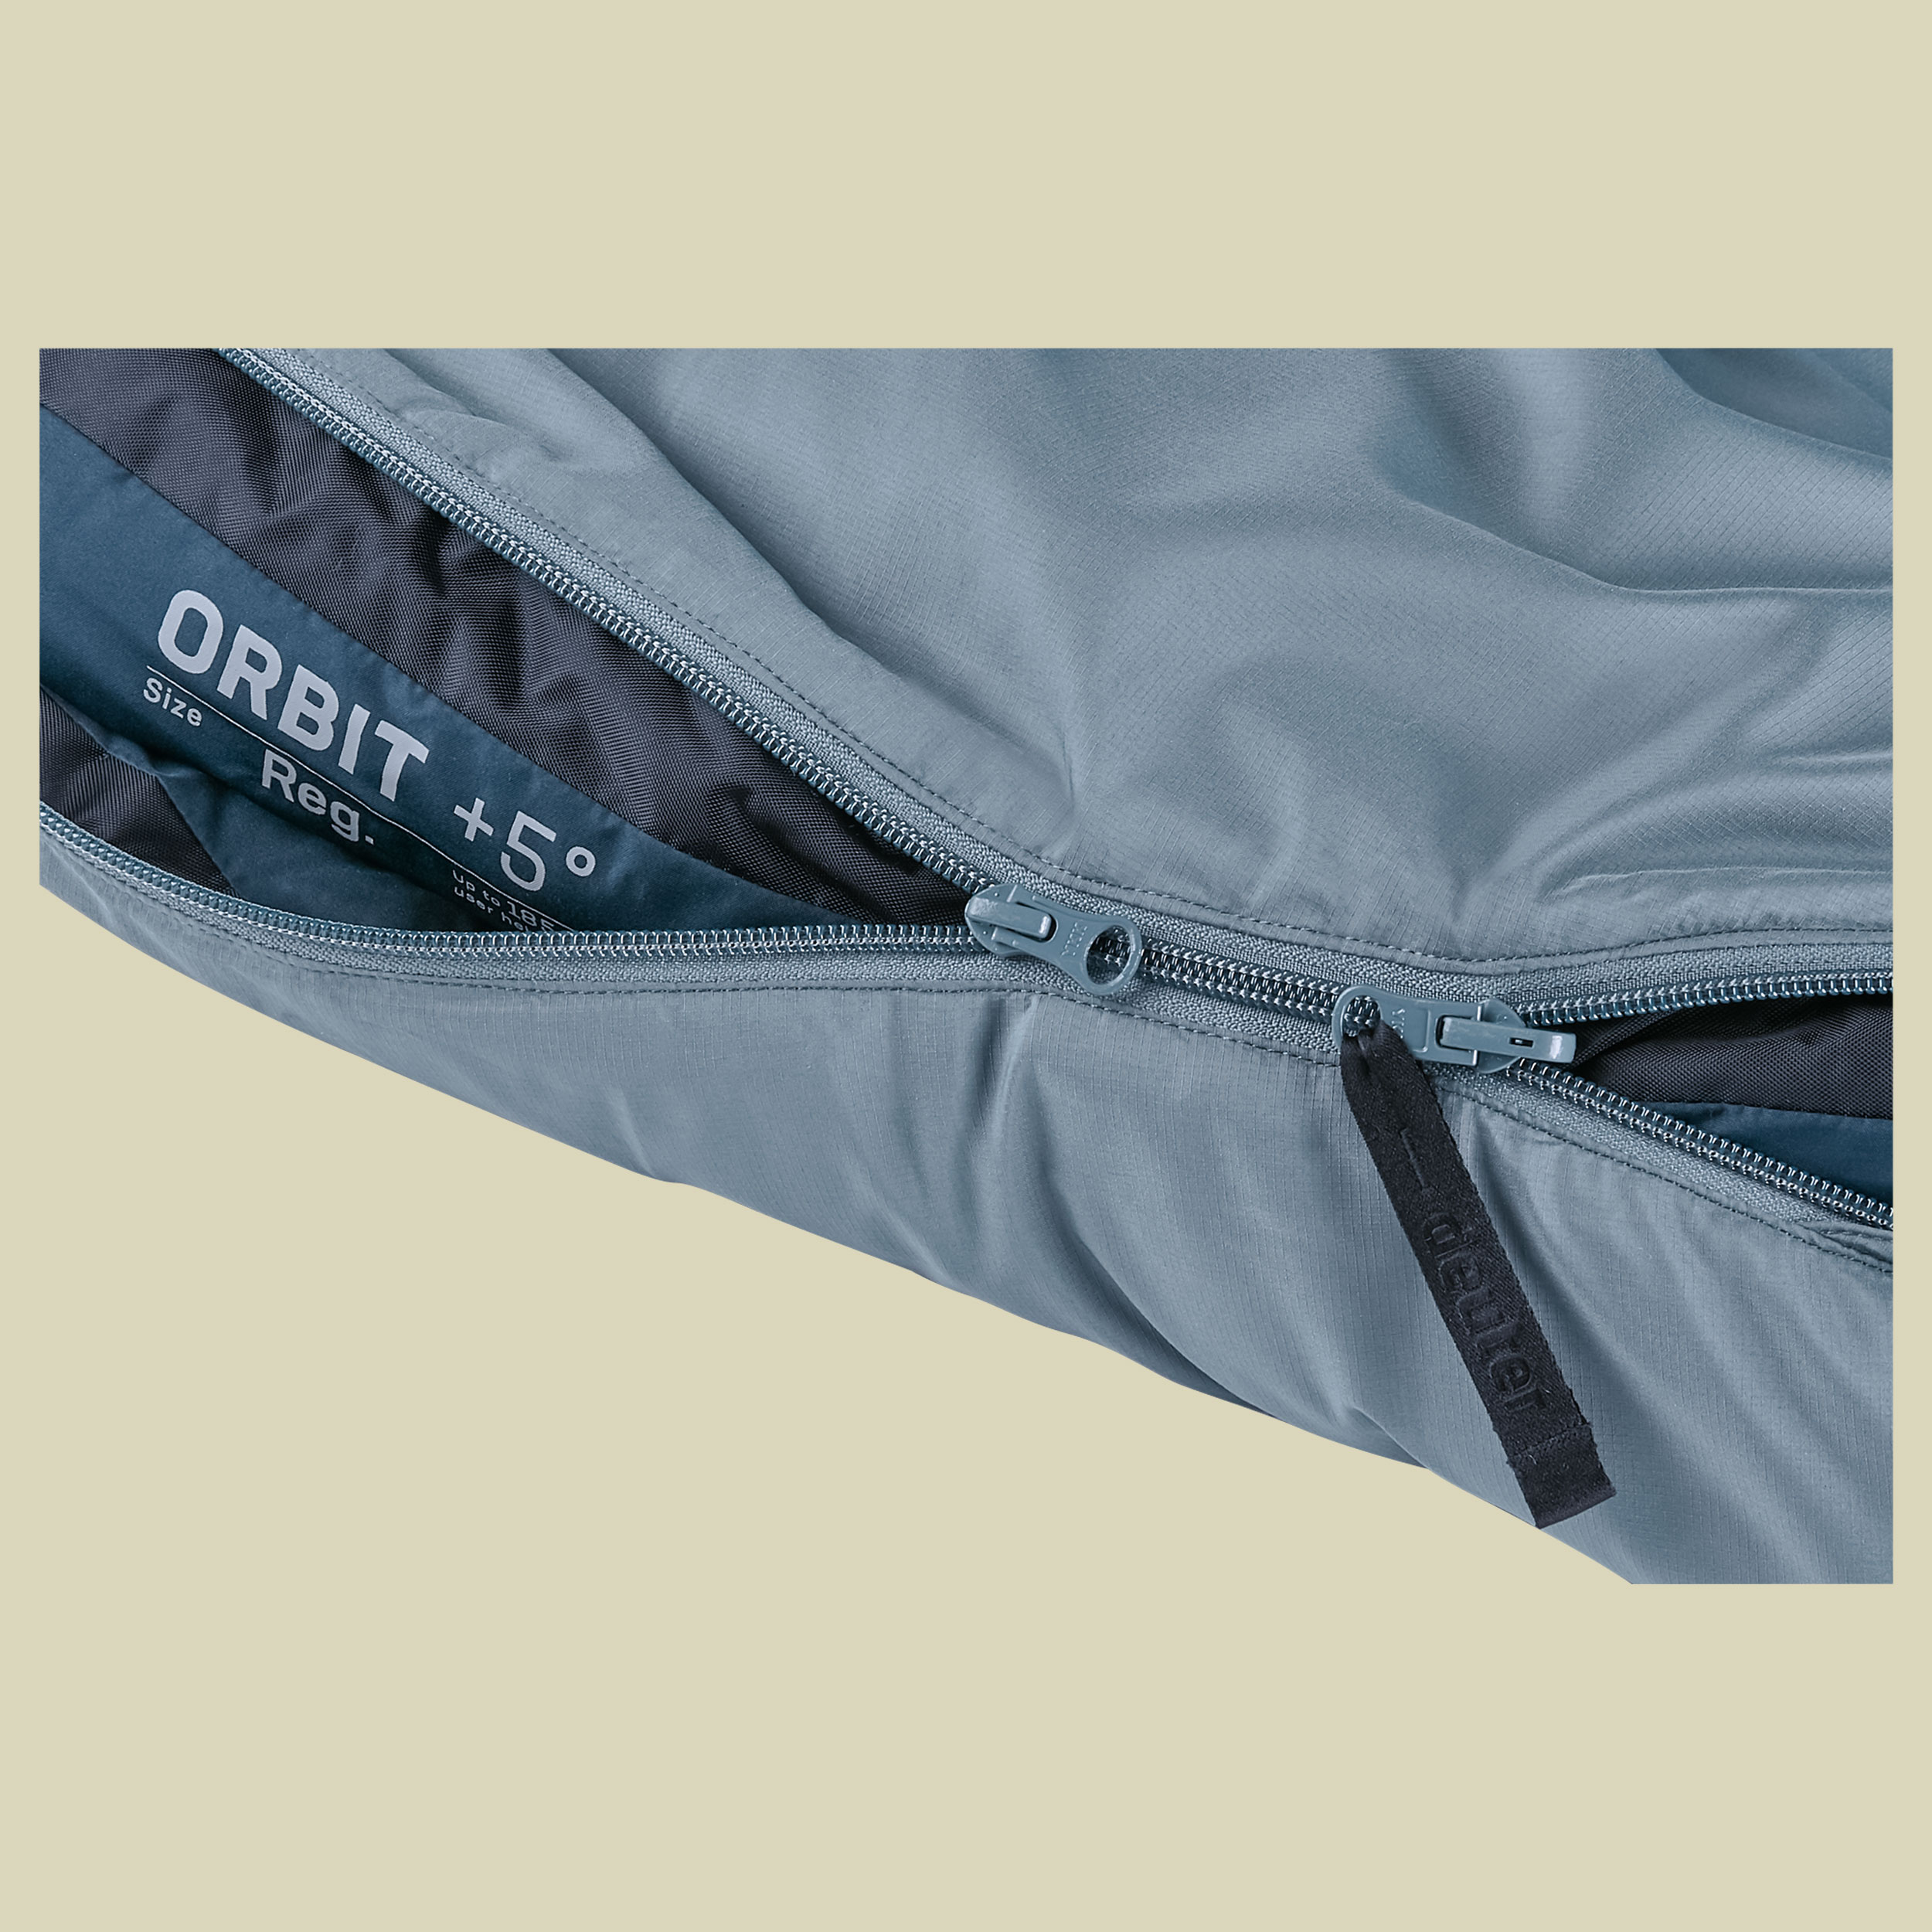 Orbit +5 bis Körpergröße 200 cm Farbe shale-ink, Reißverschluss links